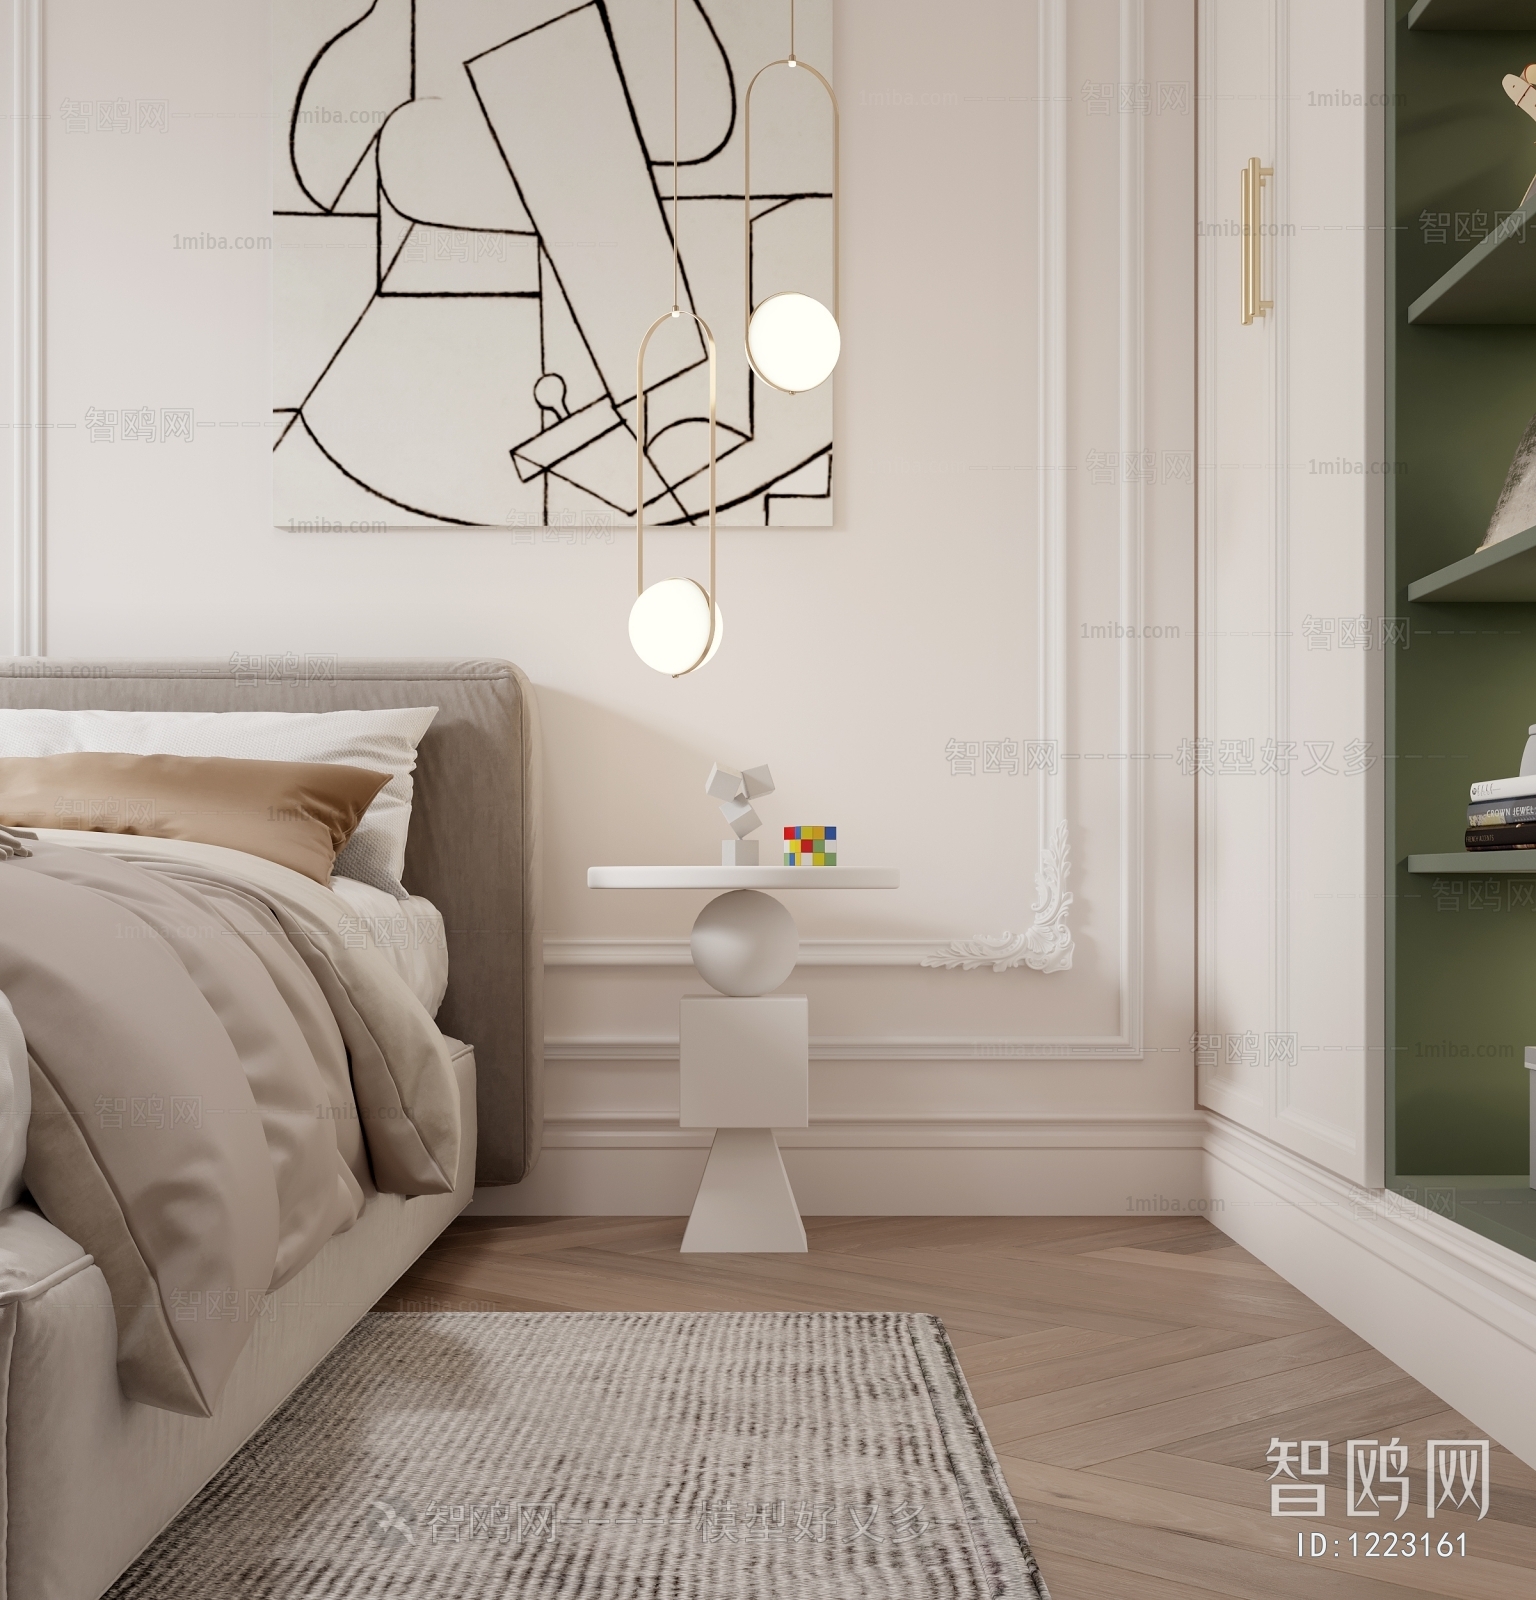 Nordic Style Wabi-sabi Style Bedroom